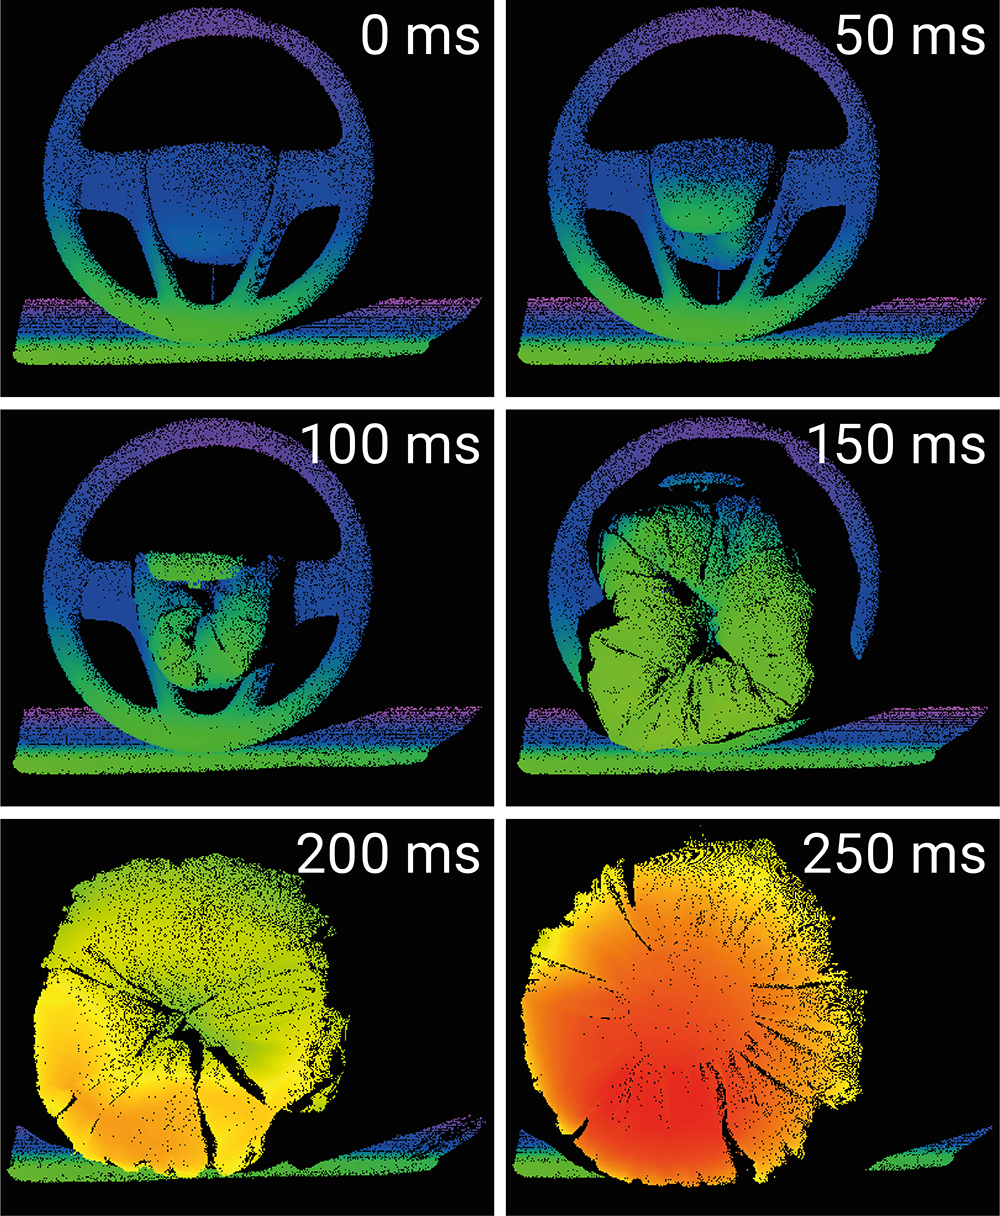 Farbcodierte 3D-Punktwolken der Messung eines sich entfaltenden Airbag-Demonstrators, die zu unterschiedlichen Zeitpunkten zwischen 0 und 250 ms aufgenommen wurden.